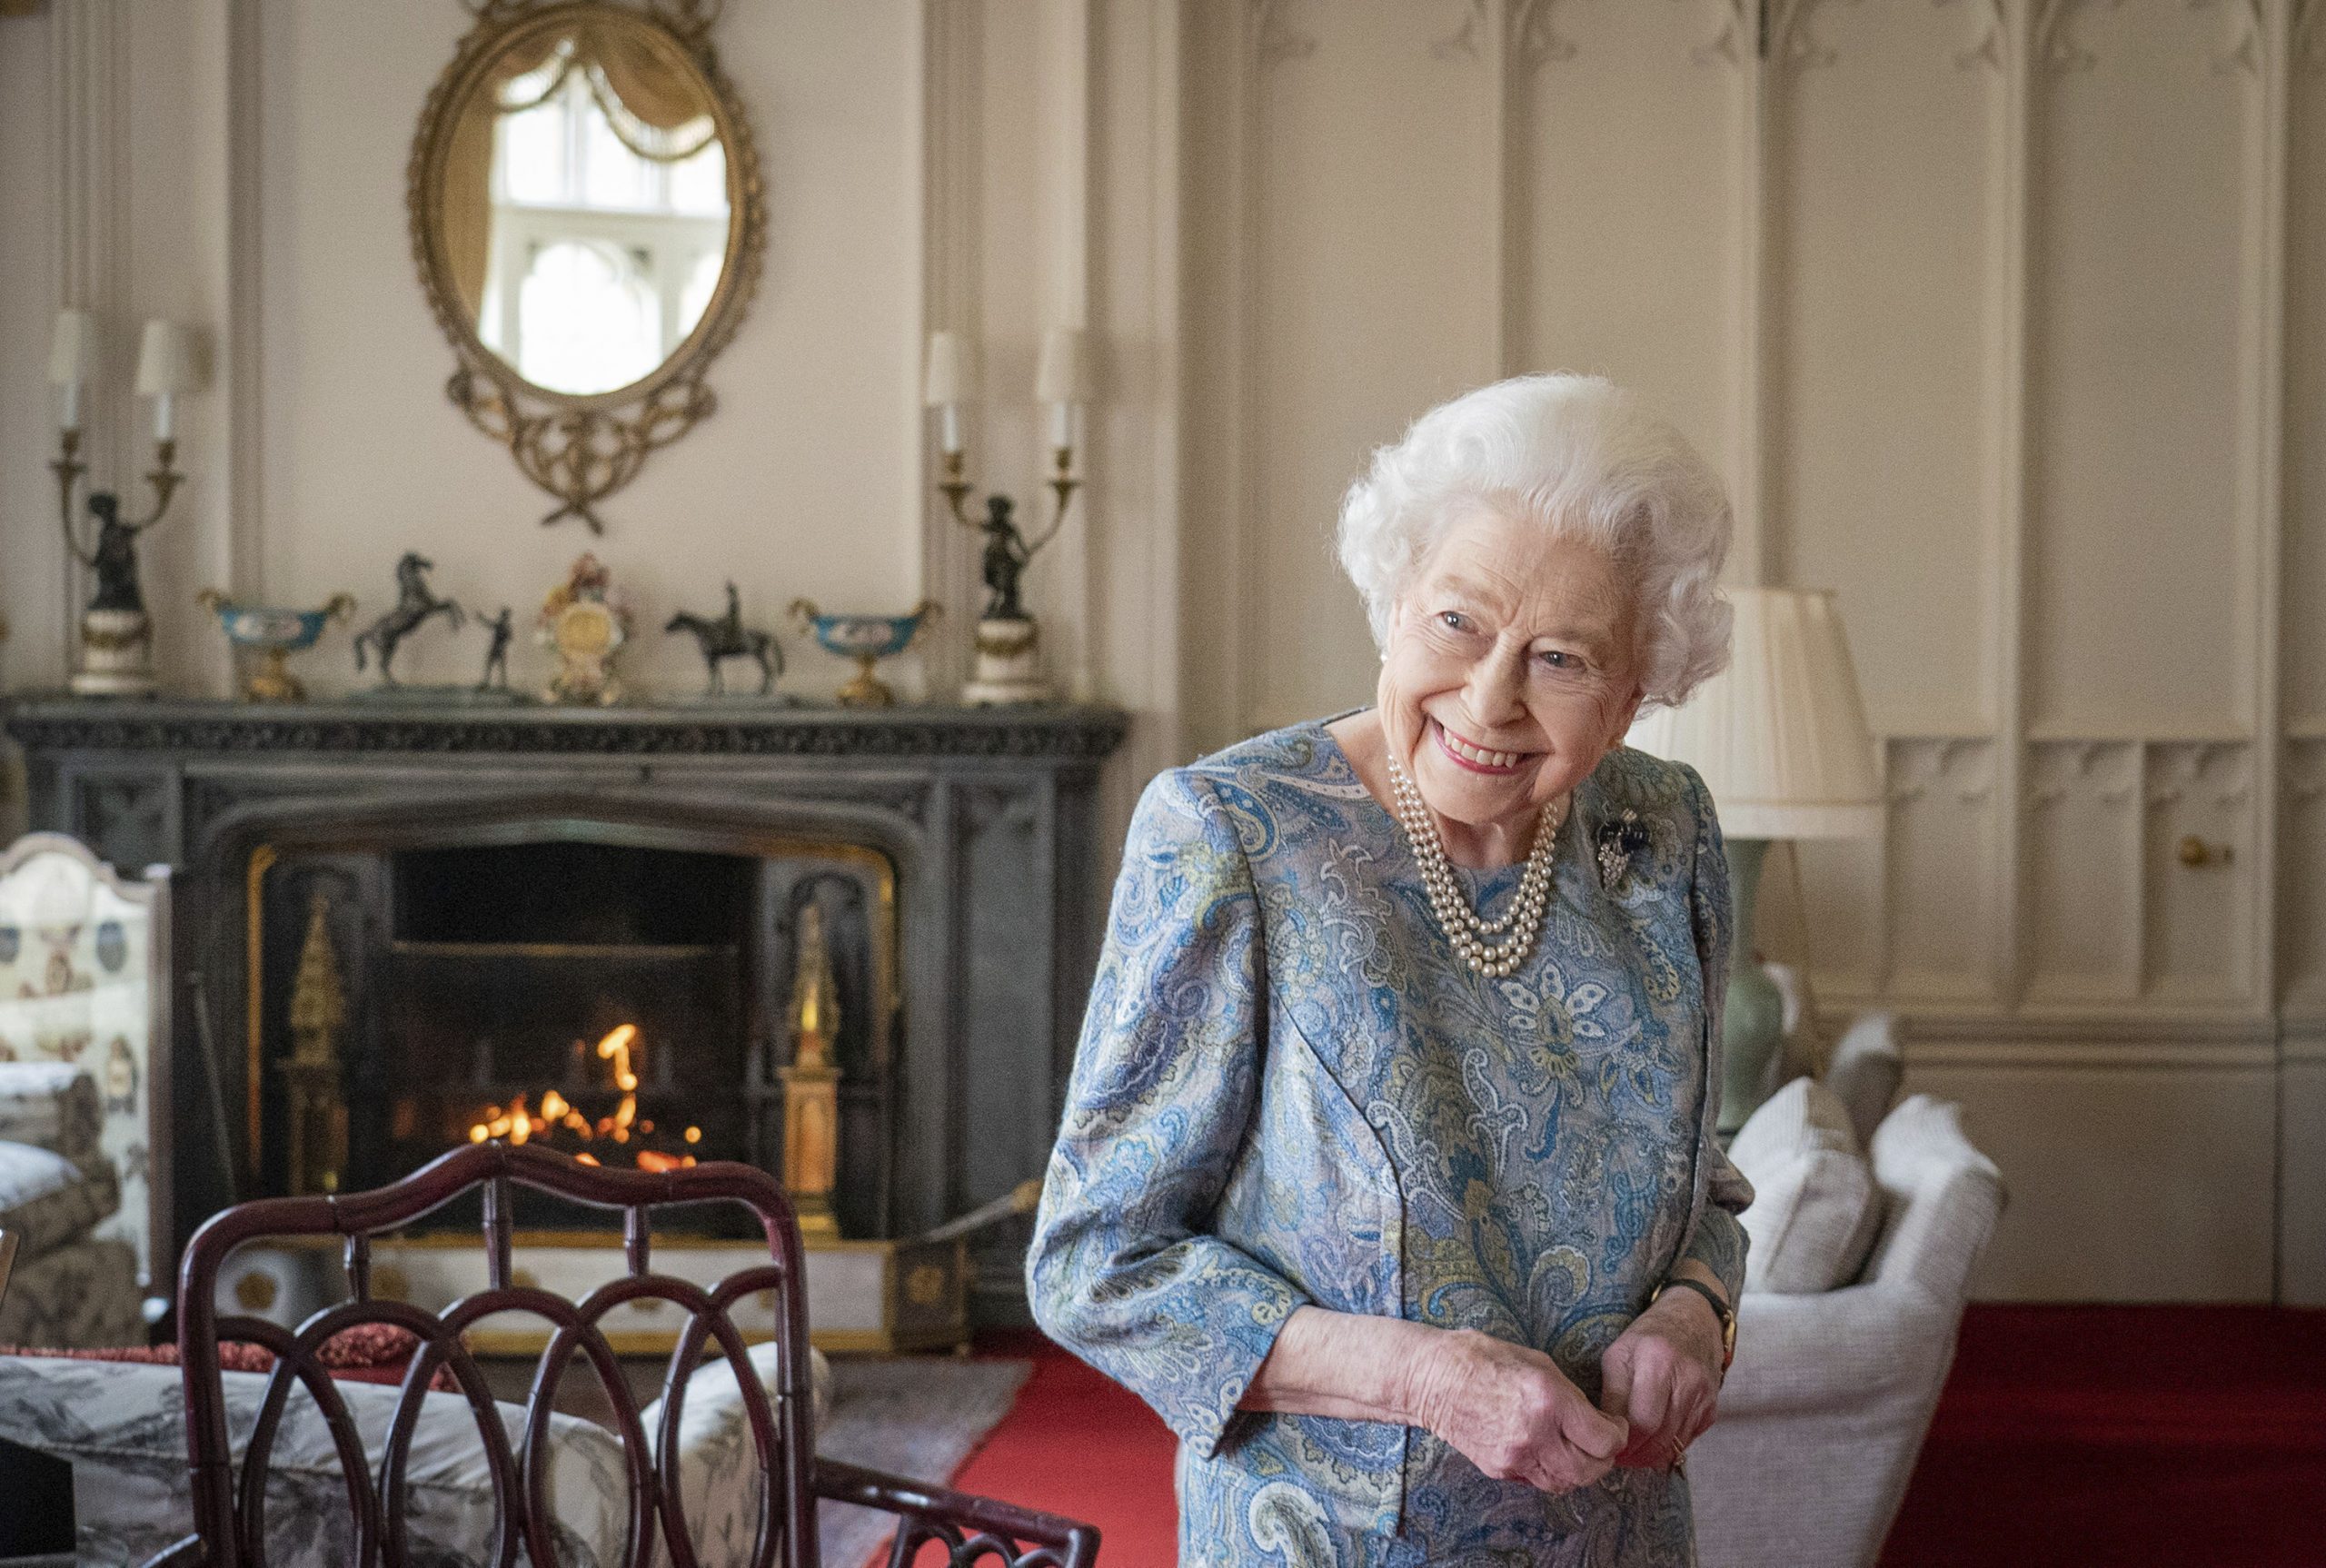 Queen Elizabeth II dead: All about funeral arrangements